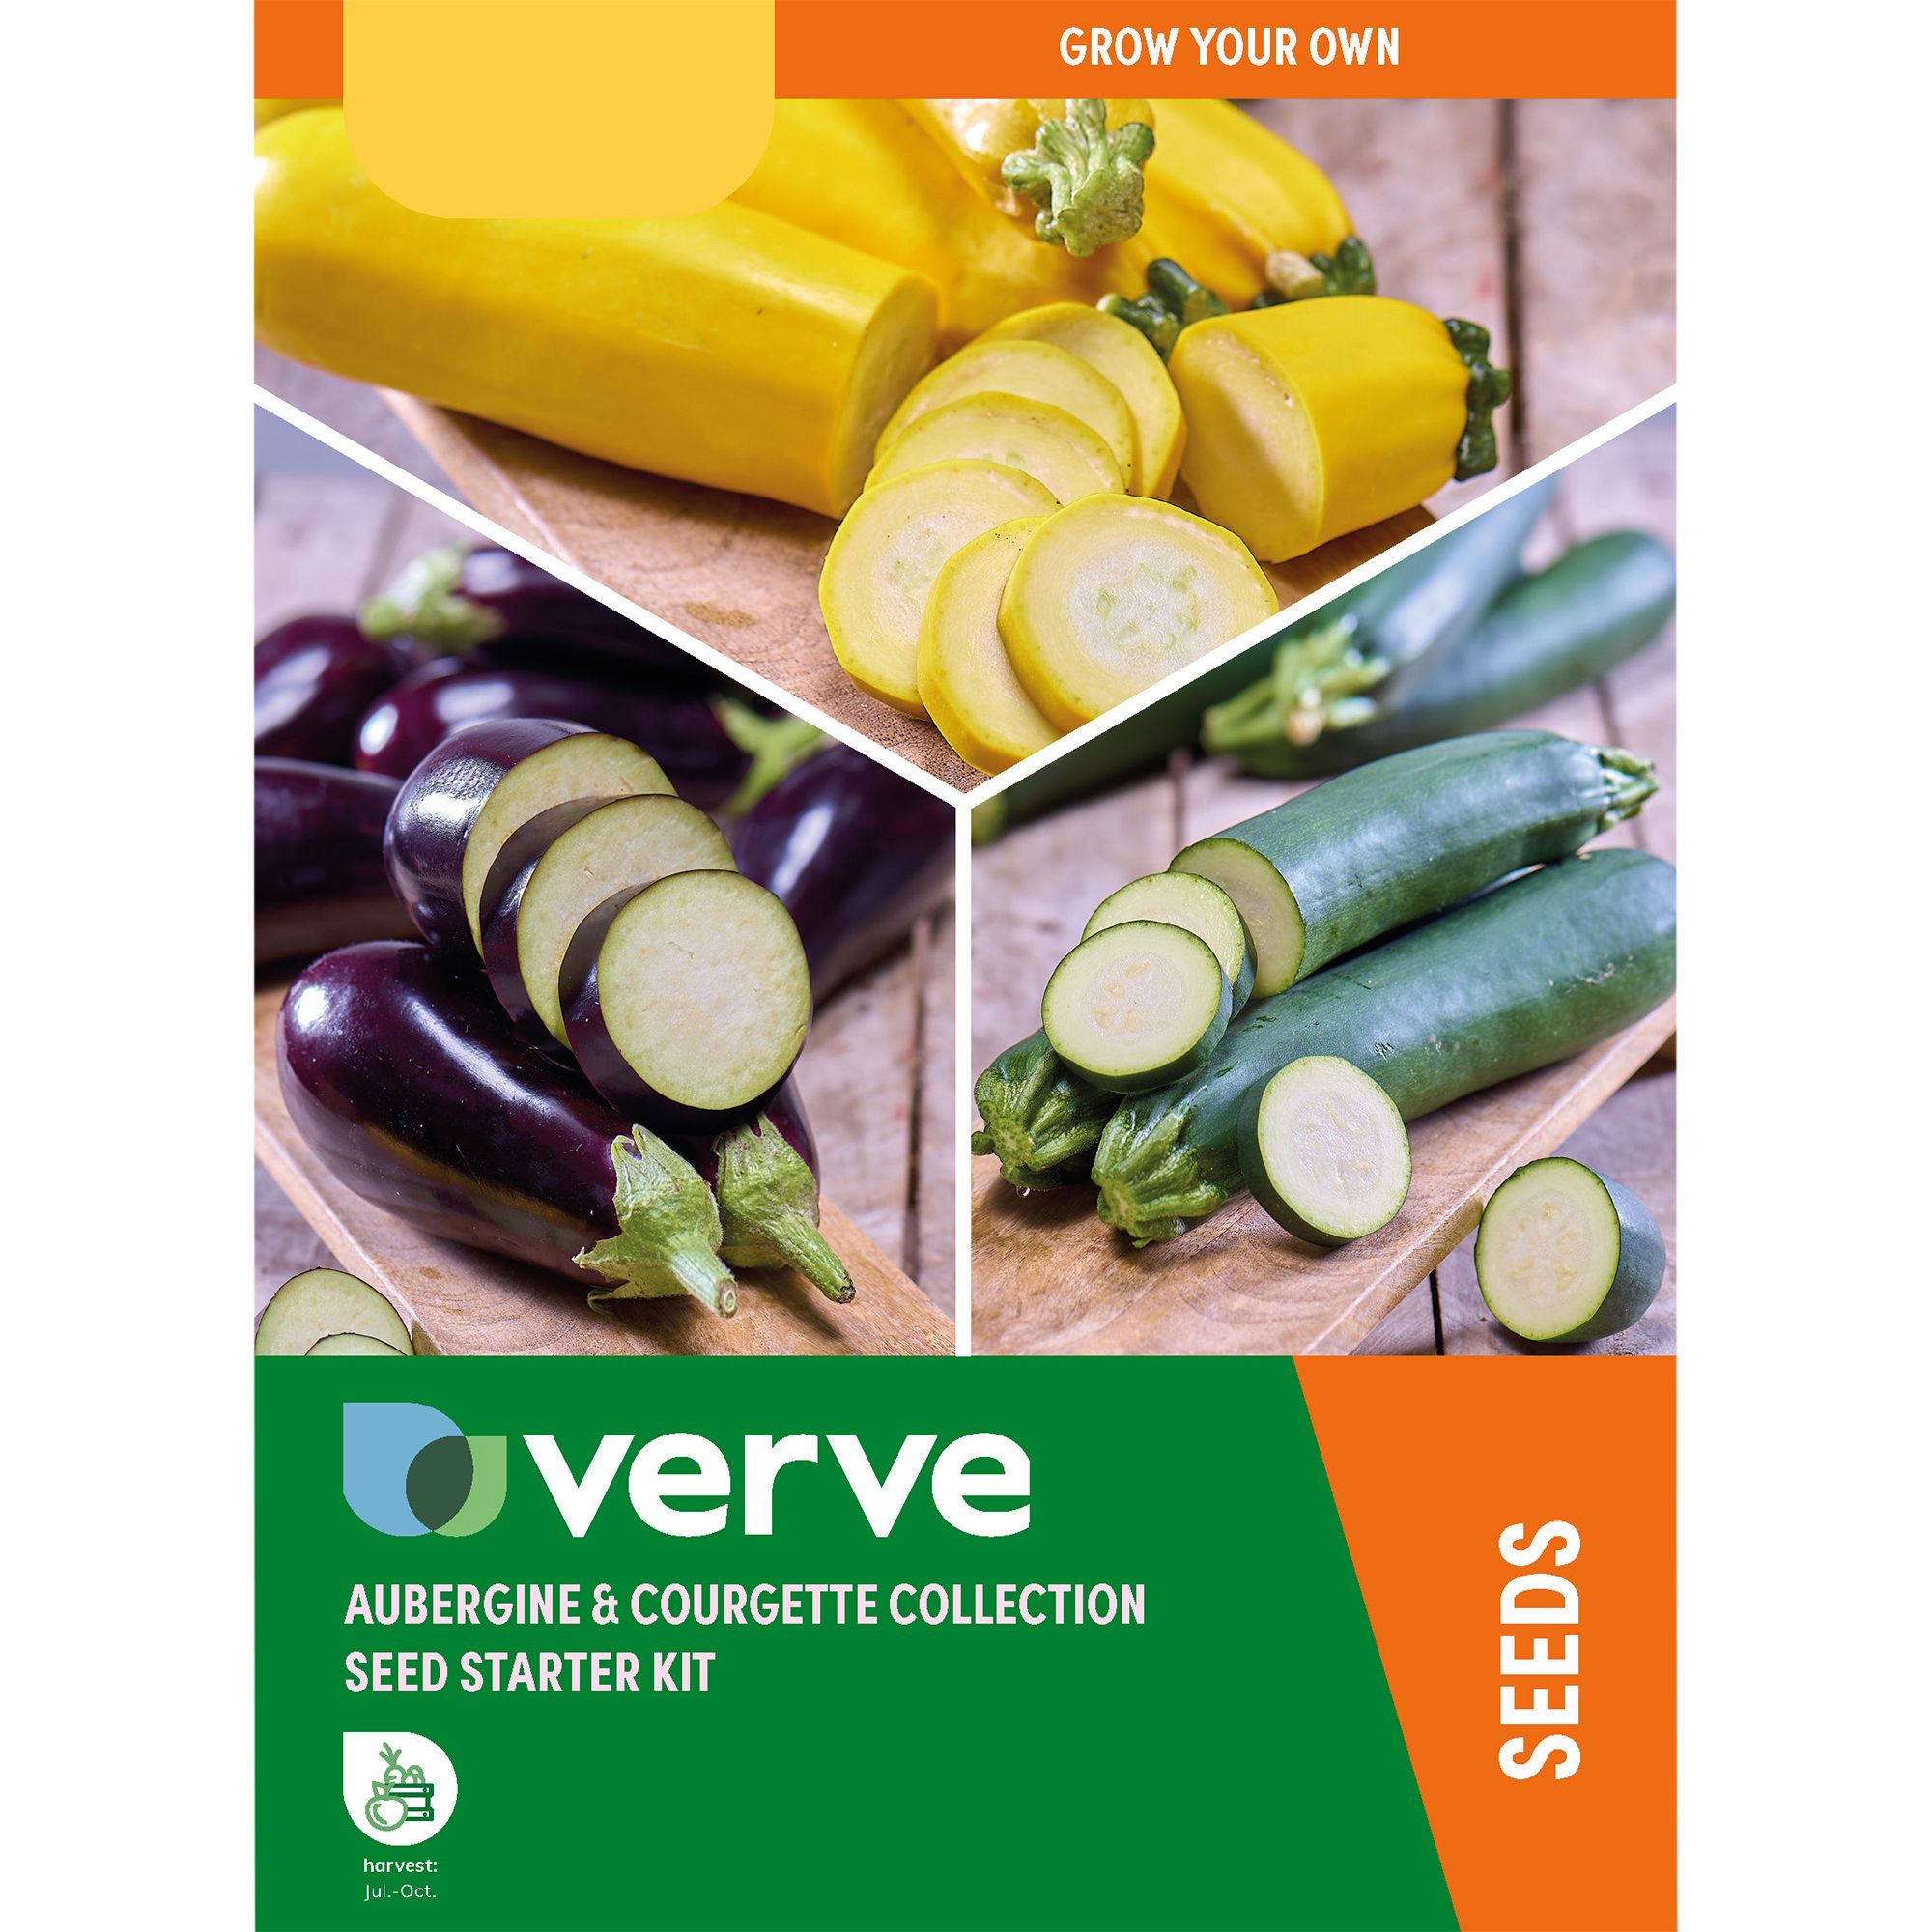 Verve Aubergine & courgette Vegetable bulbs & seeds kit